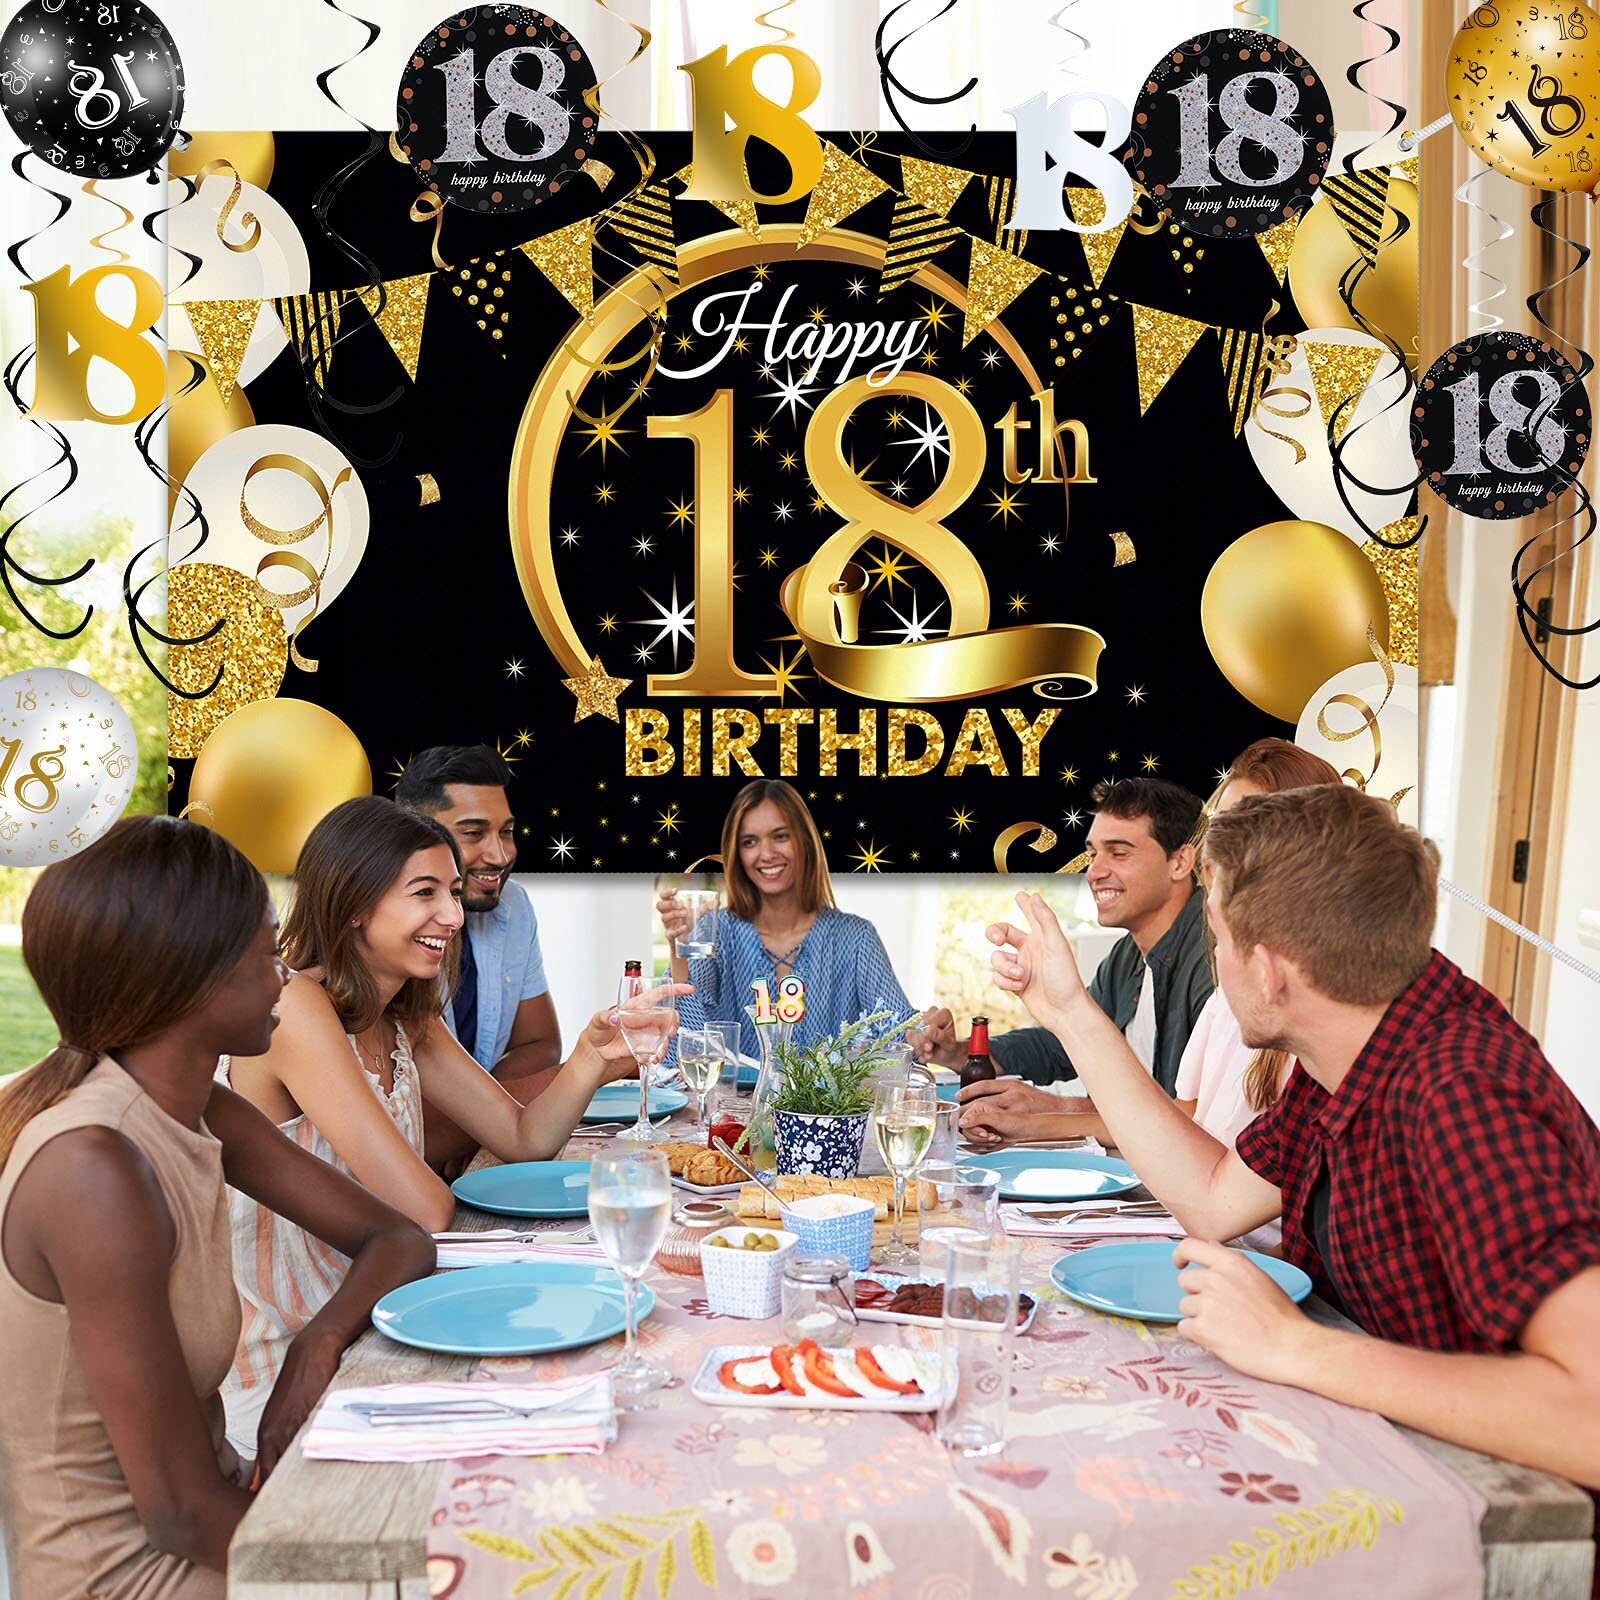 Decoraciones de fiesta de cumpleaños de 18 años en oro negro, 18